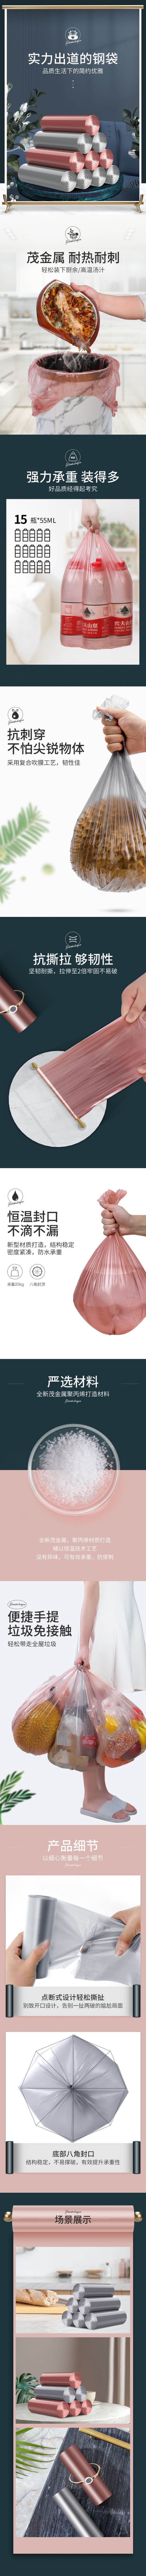 淘宝美工豆沙包日用百货 塑料袋 详情页作品